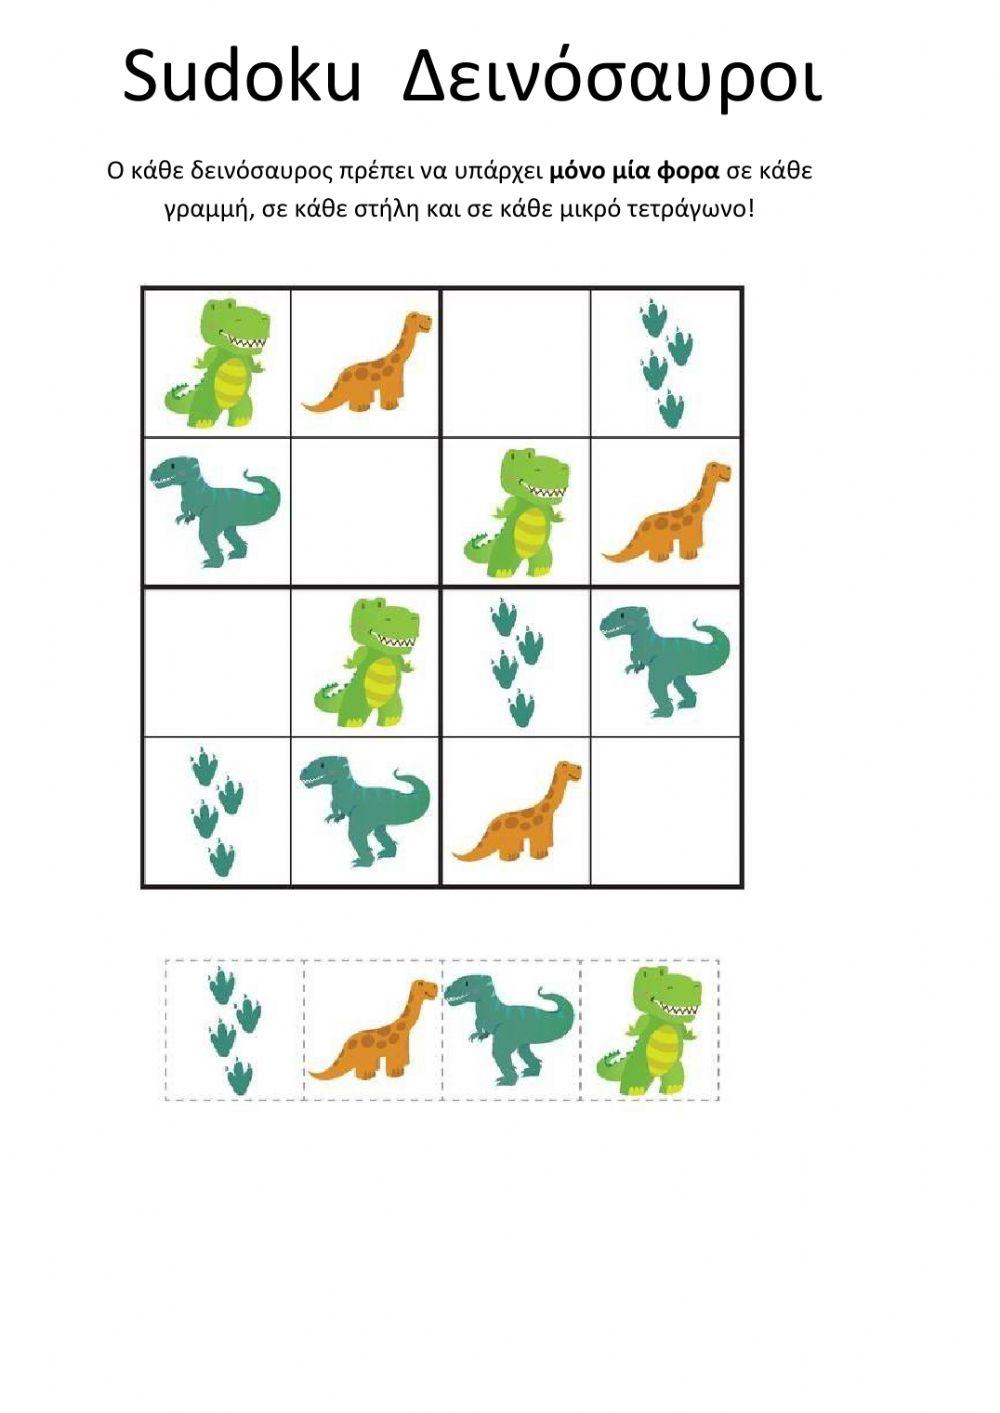 Sudoku Δεινόσαυροι